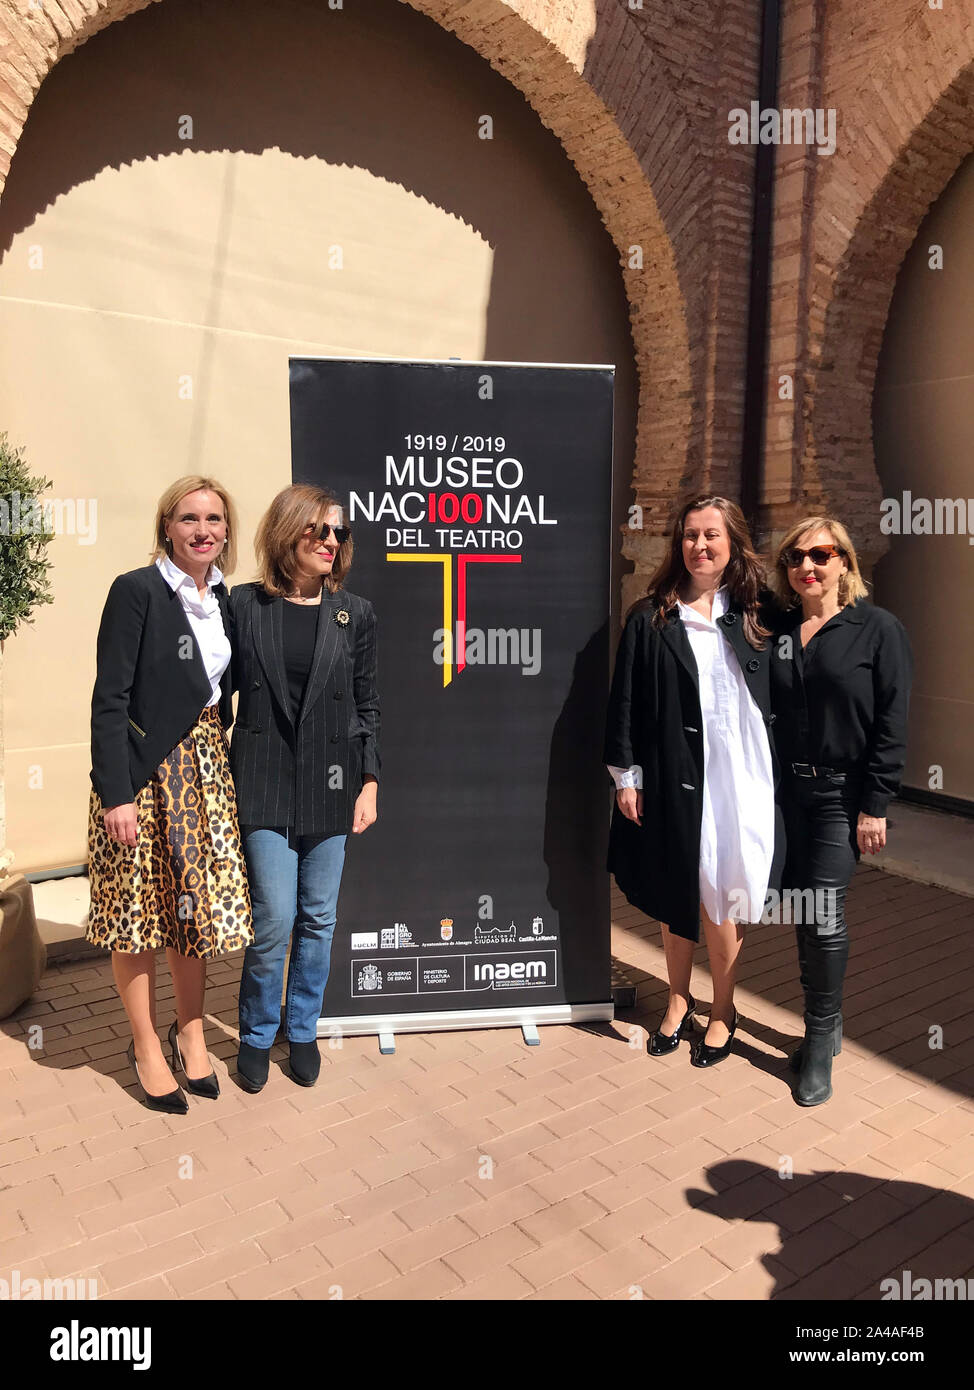 El Museo Nacional del Teatro inaugura la celebración de su Centenario con Carmen Machi, Pepa Pedroche y Beatriz Patiño Lara Foto de stock